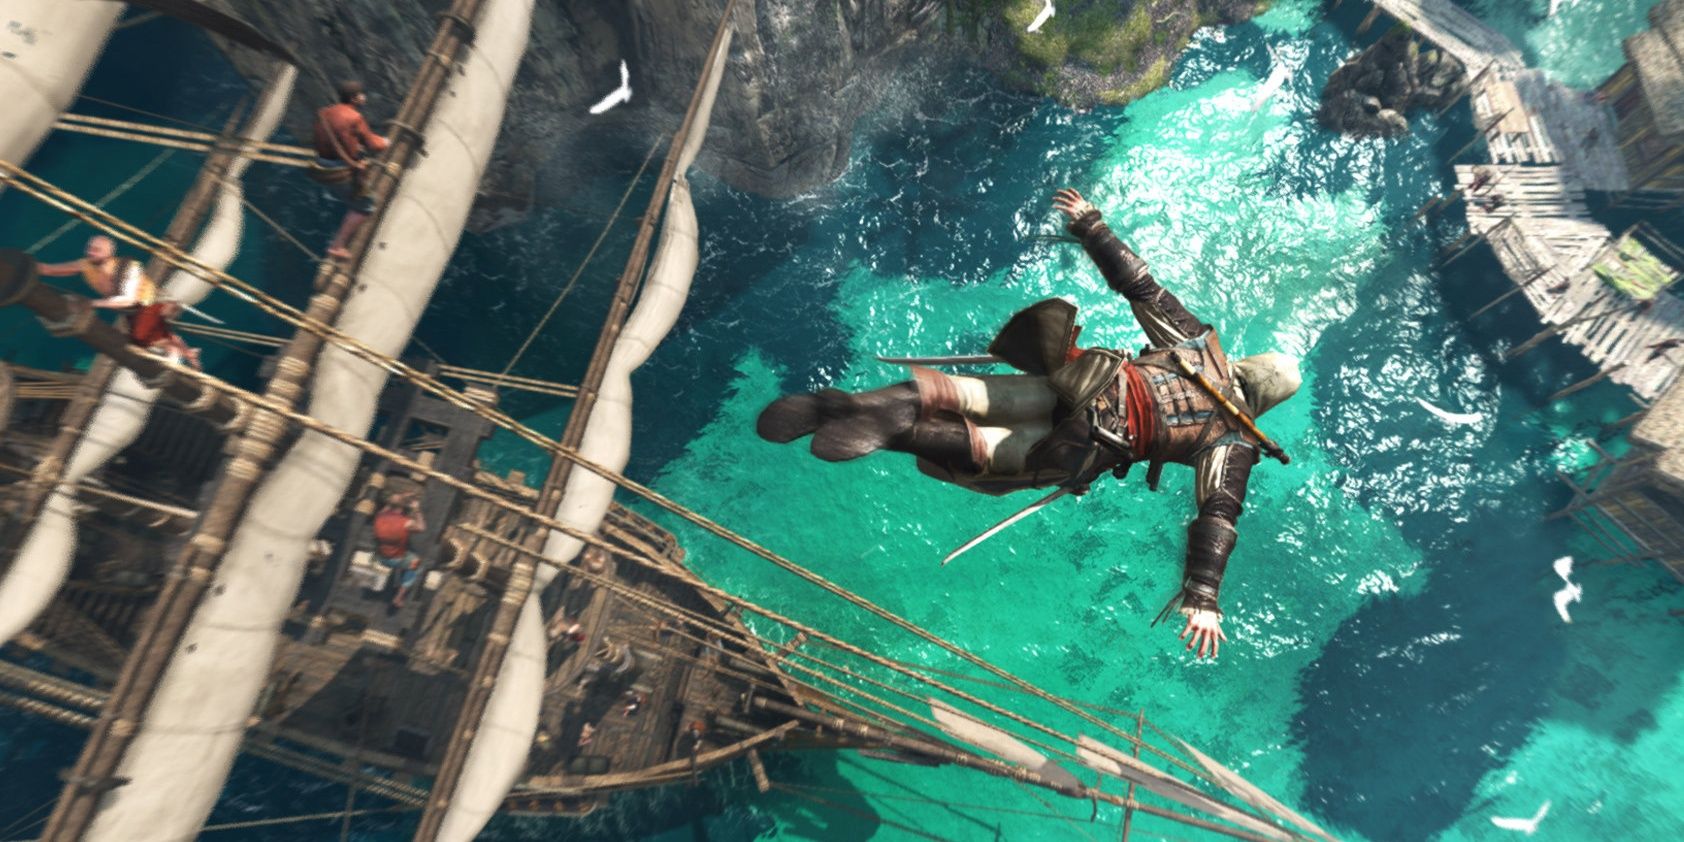 Edward Kenway en Assassin's Creed 4: Black Flag sumergiéndose en una piscina cerca del barco